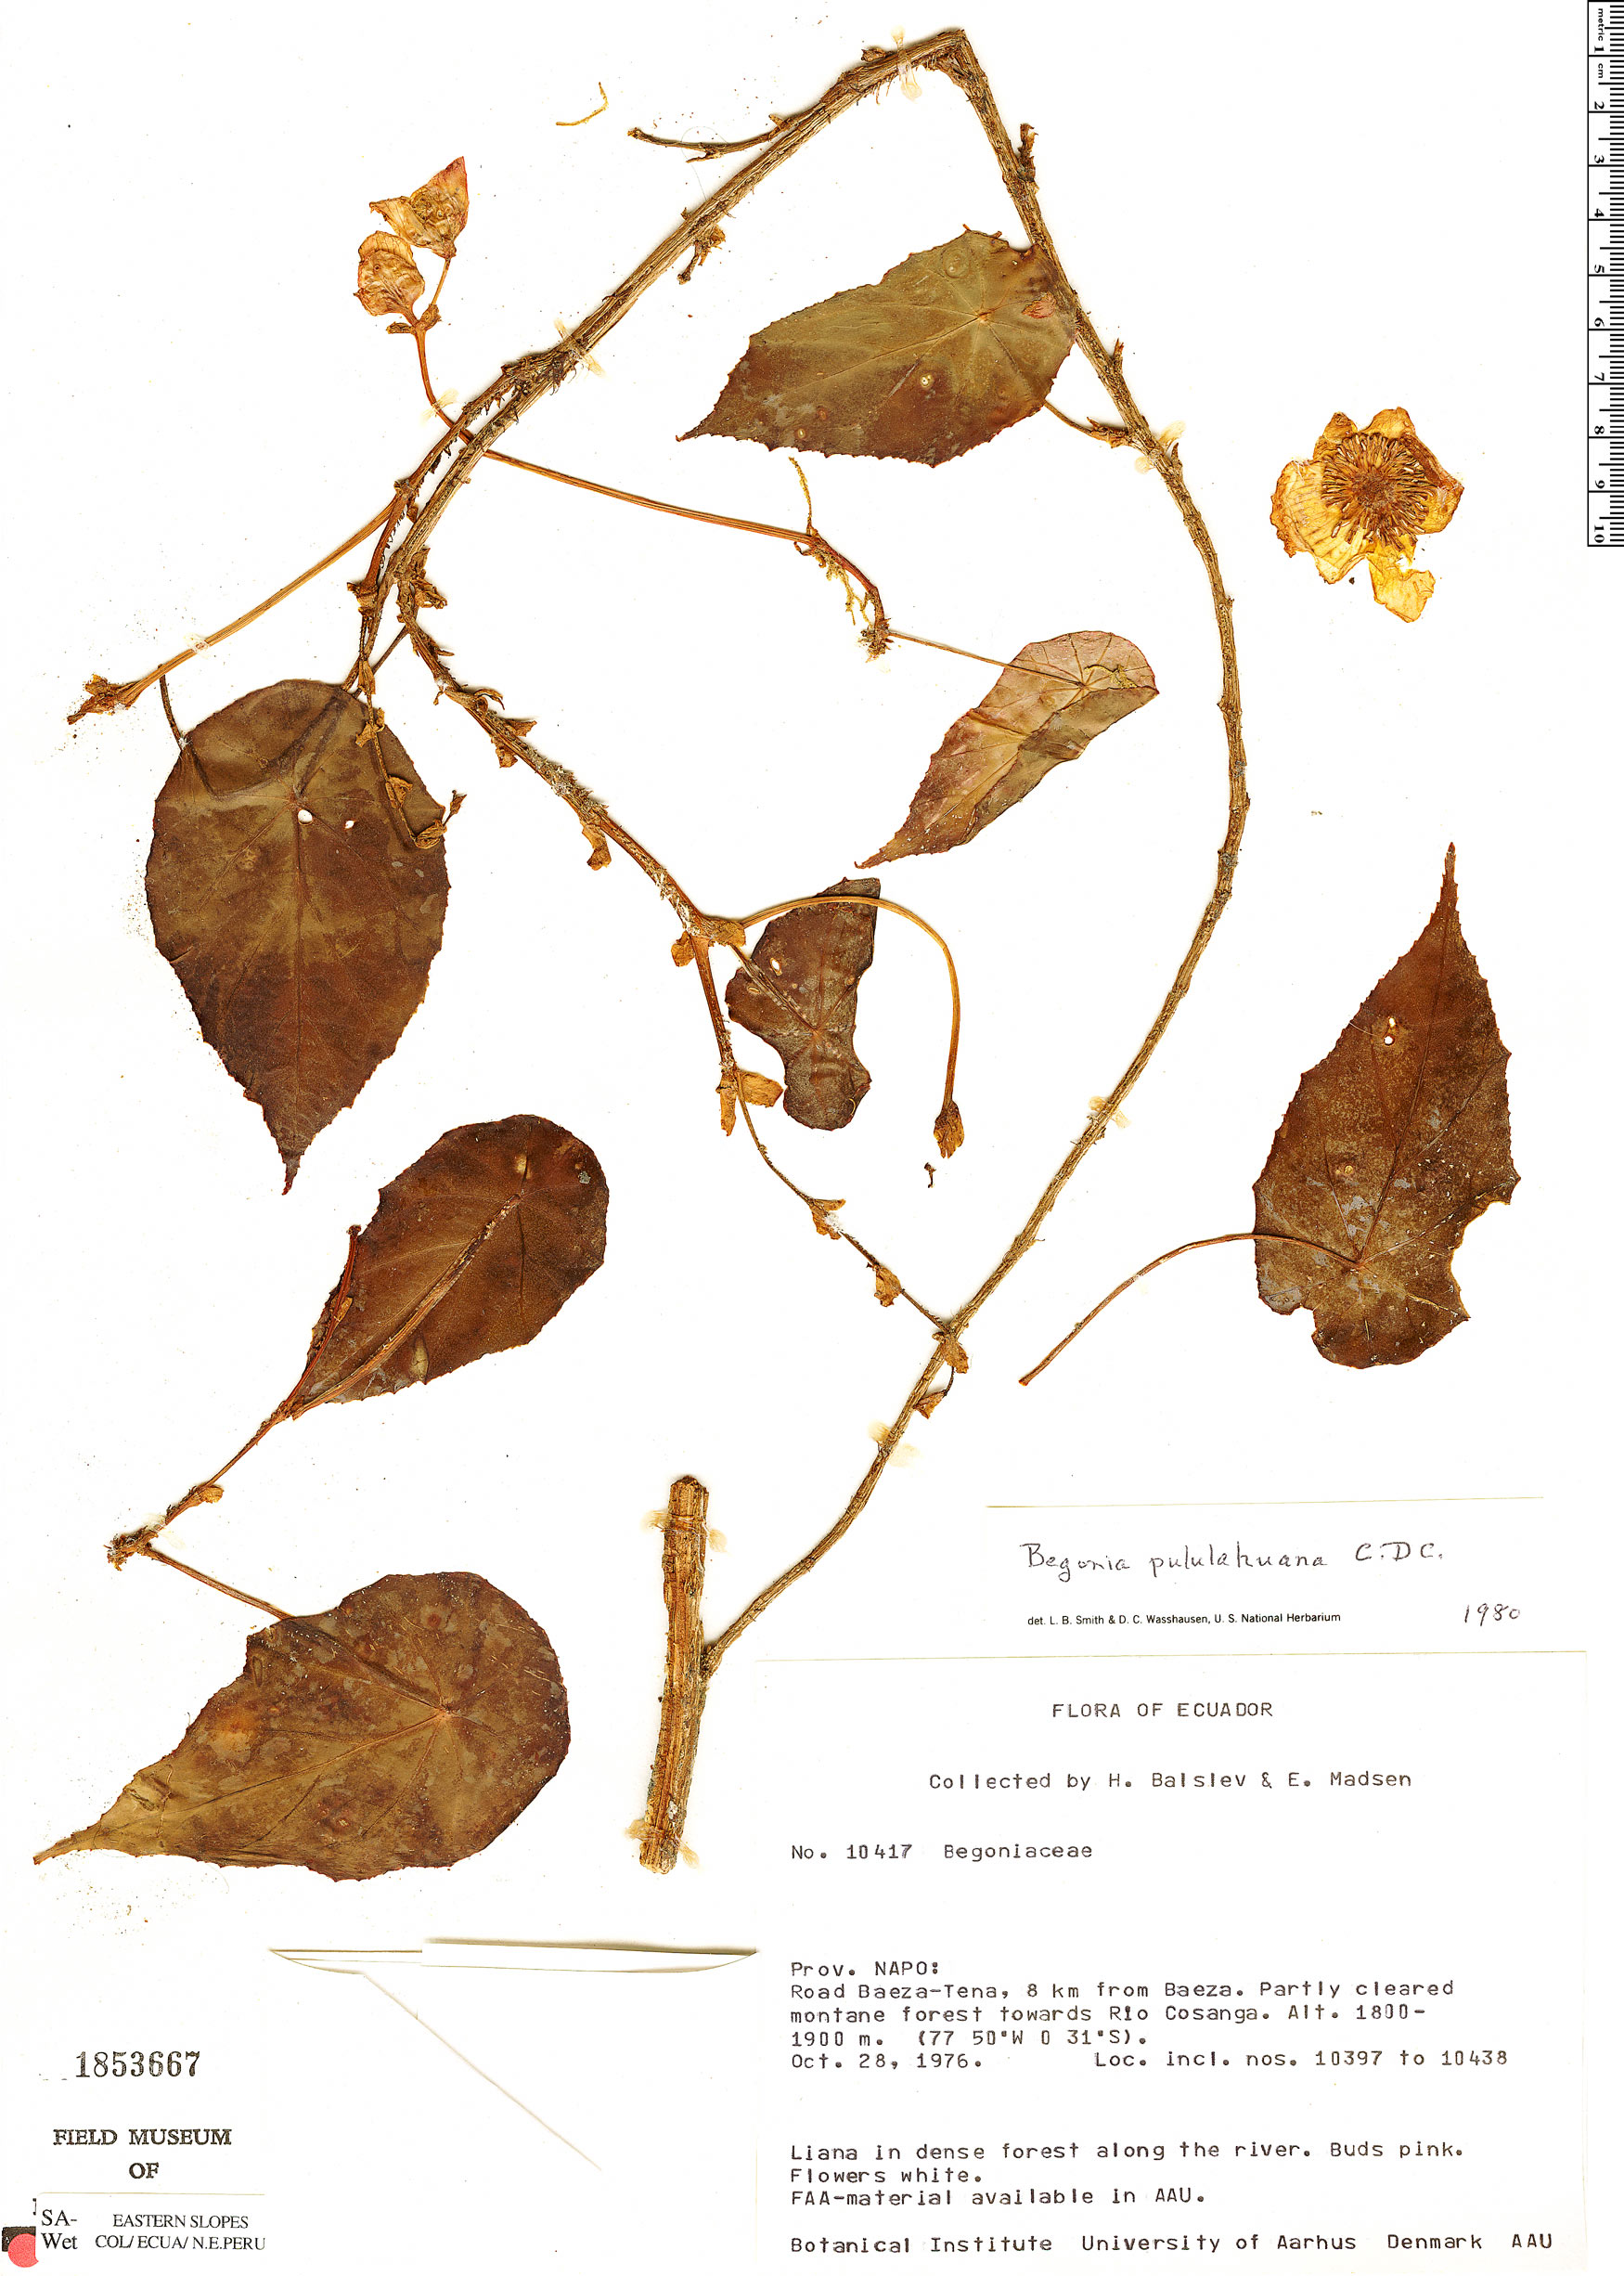 Begonia hitchcockii image